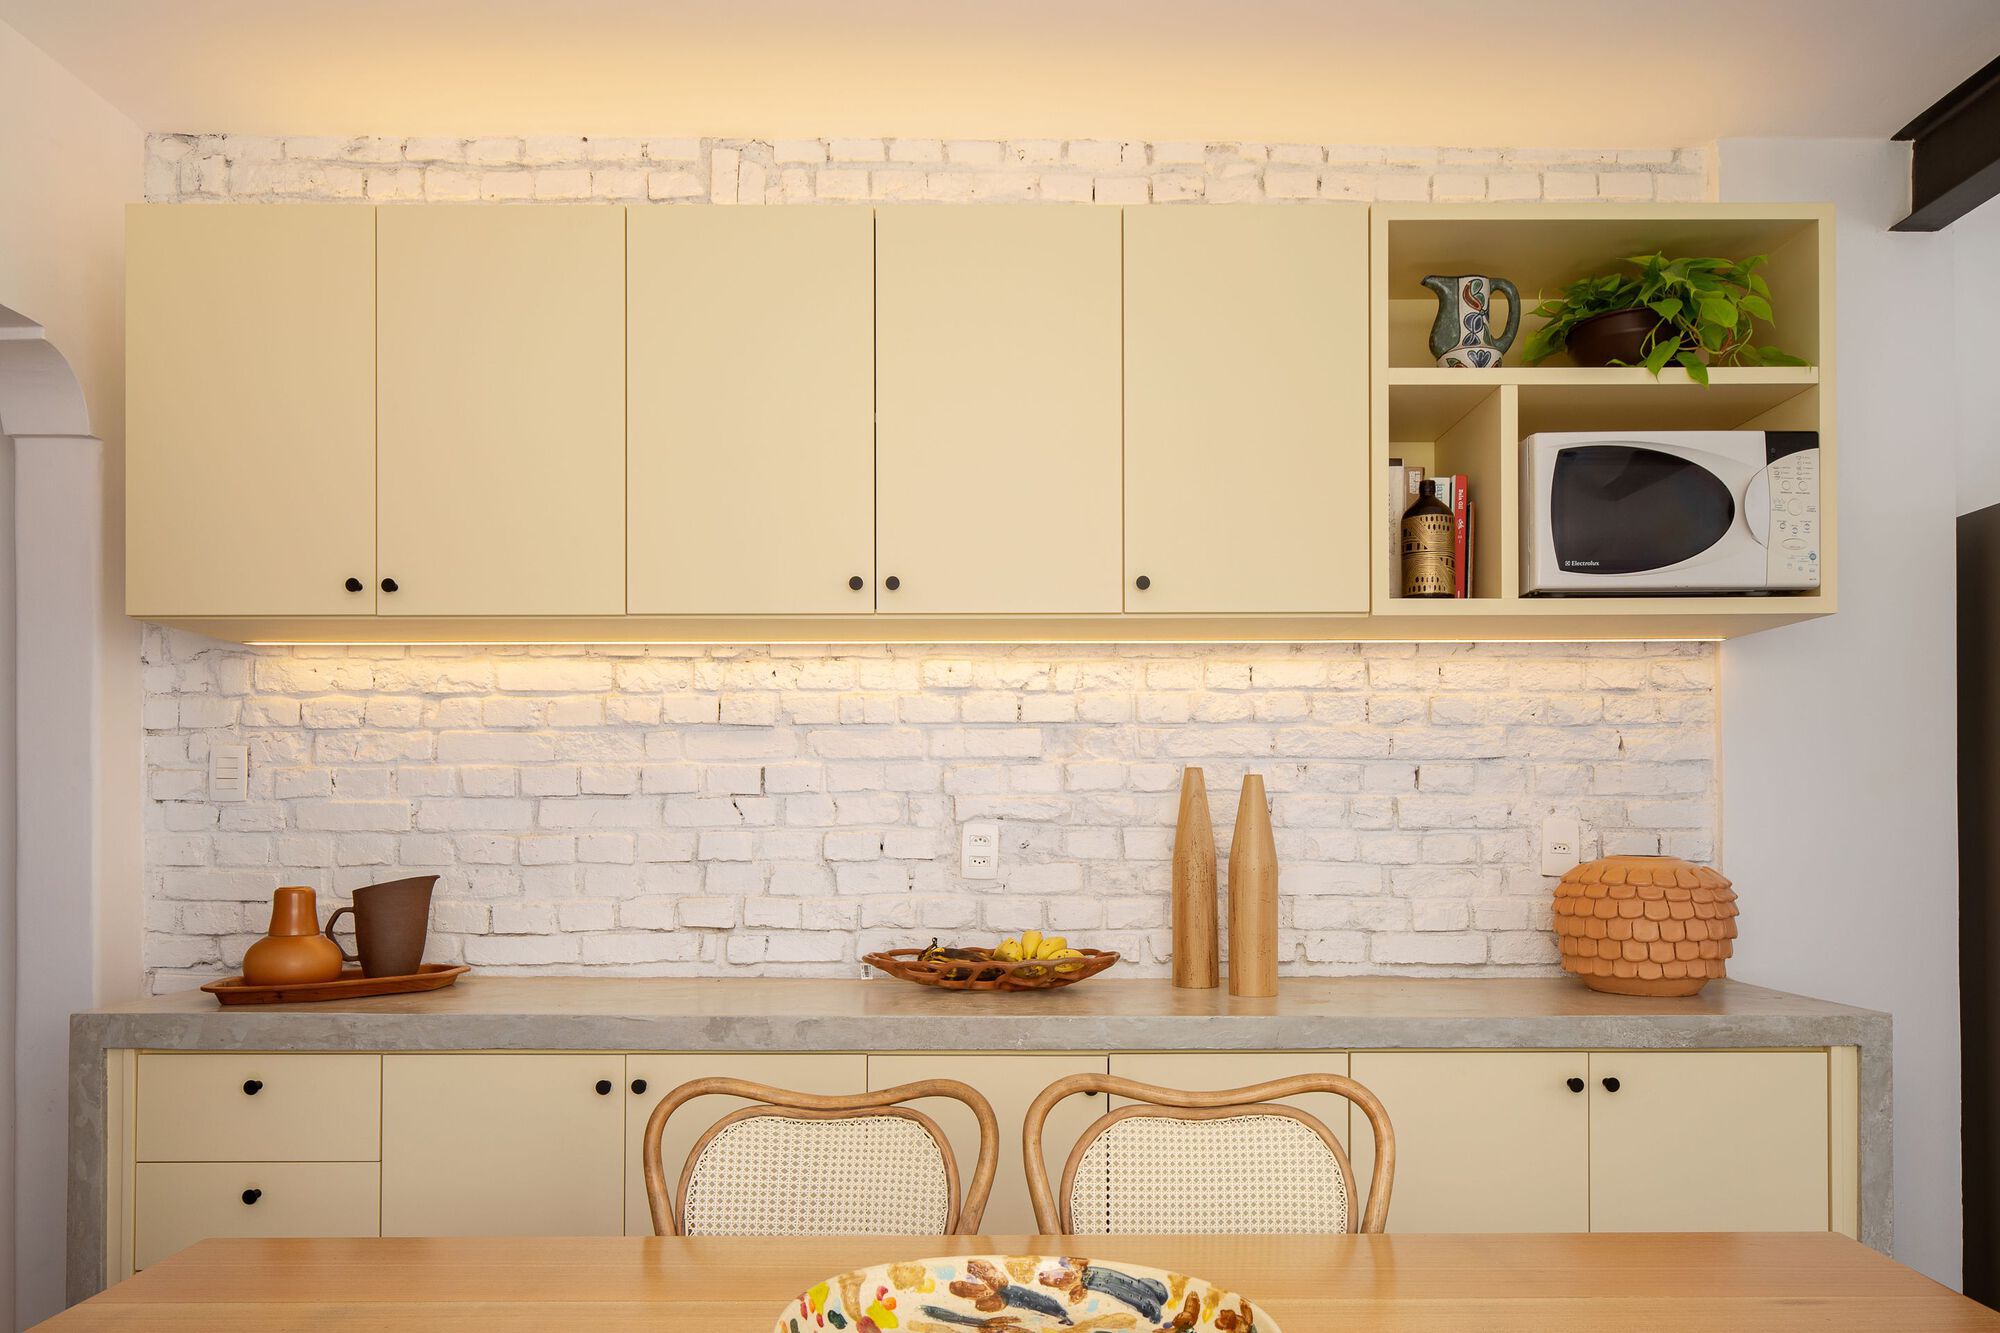 改善厨房空间的人工照明小贴士|ART-Arrakis | 建筑室内设计的创新与灵感